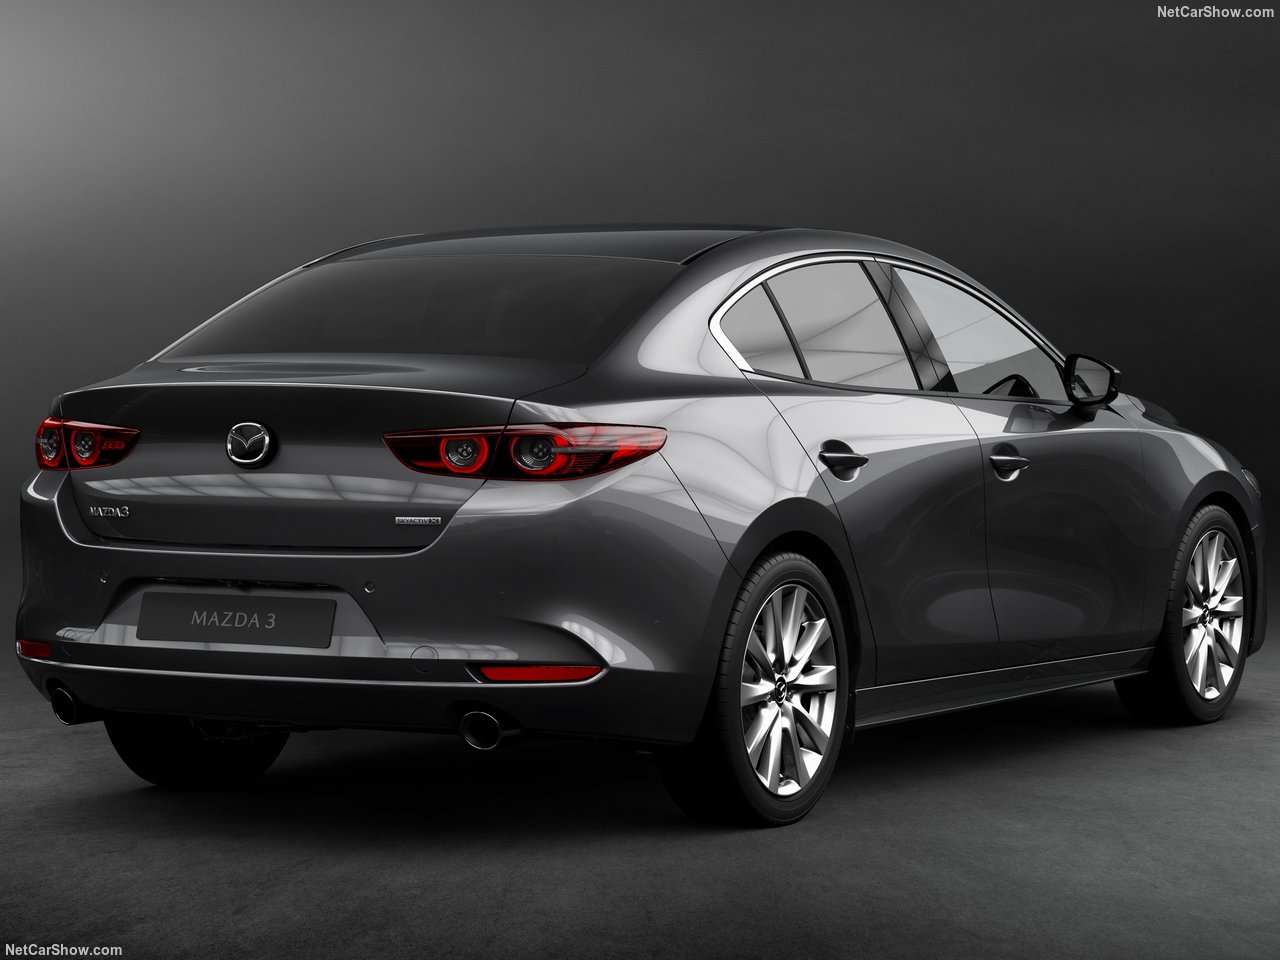 2019 Mazda 3 sedan ve Mazda 3 hatchback Los Angeles Otomobil Fuarı’nda tanıtıldı